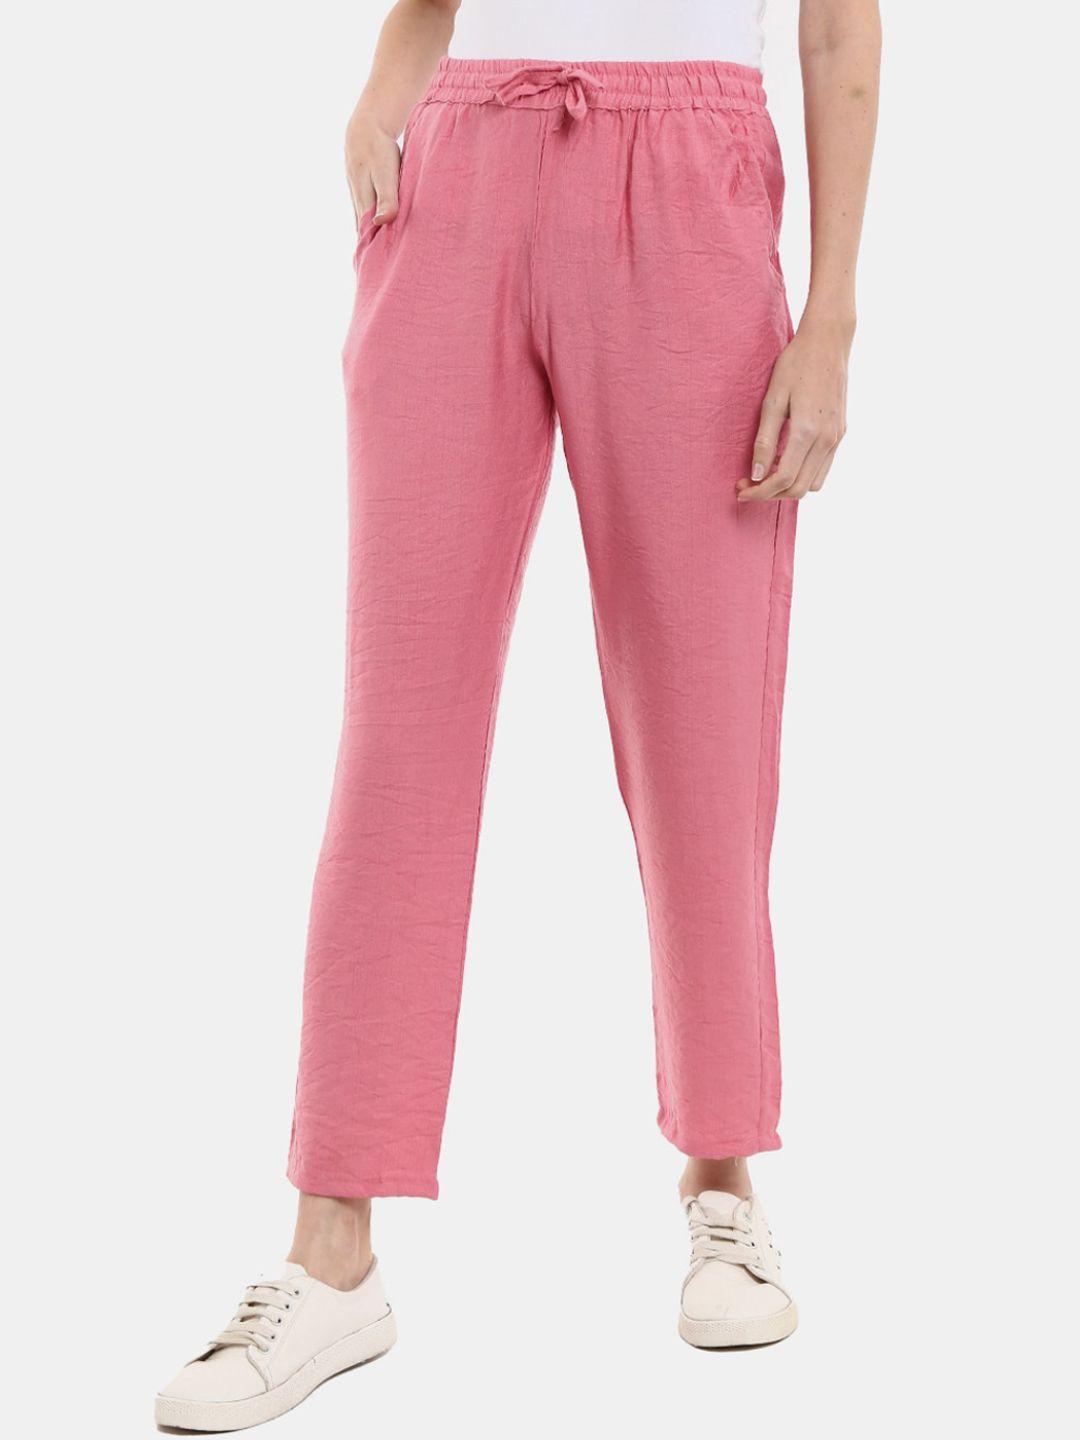 v-mart-pink-solid-cotton-track-pants